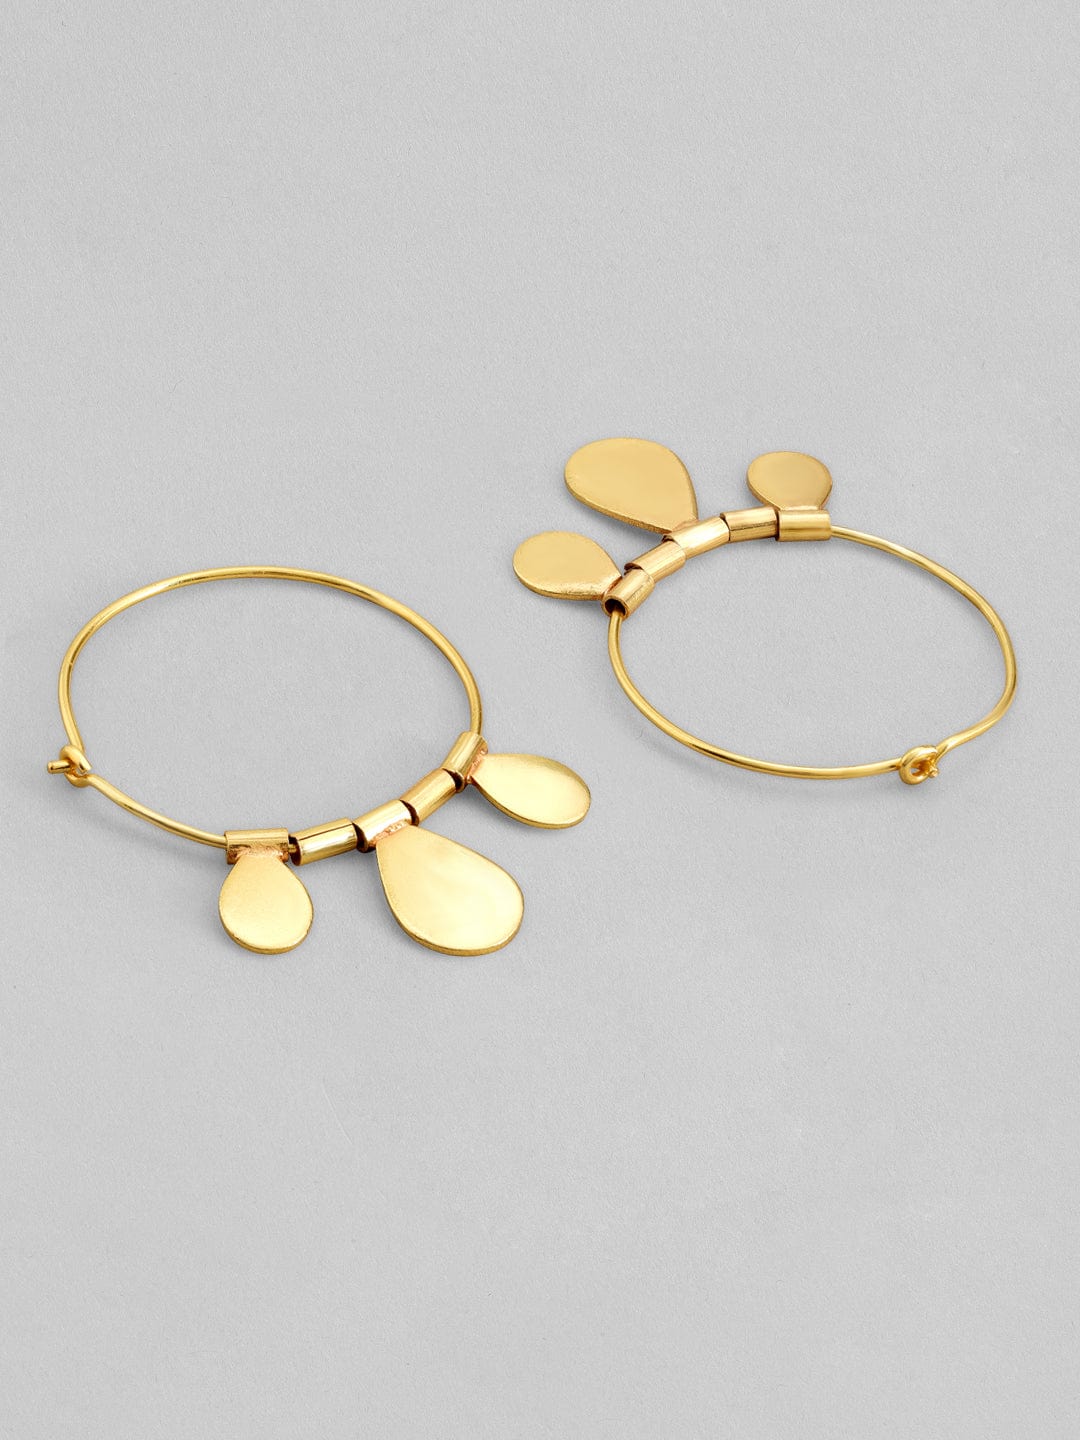 Rubans Voguish Women Gold-Plated Circular Hoop Earrings Earrings